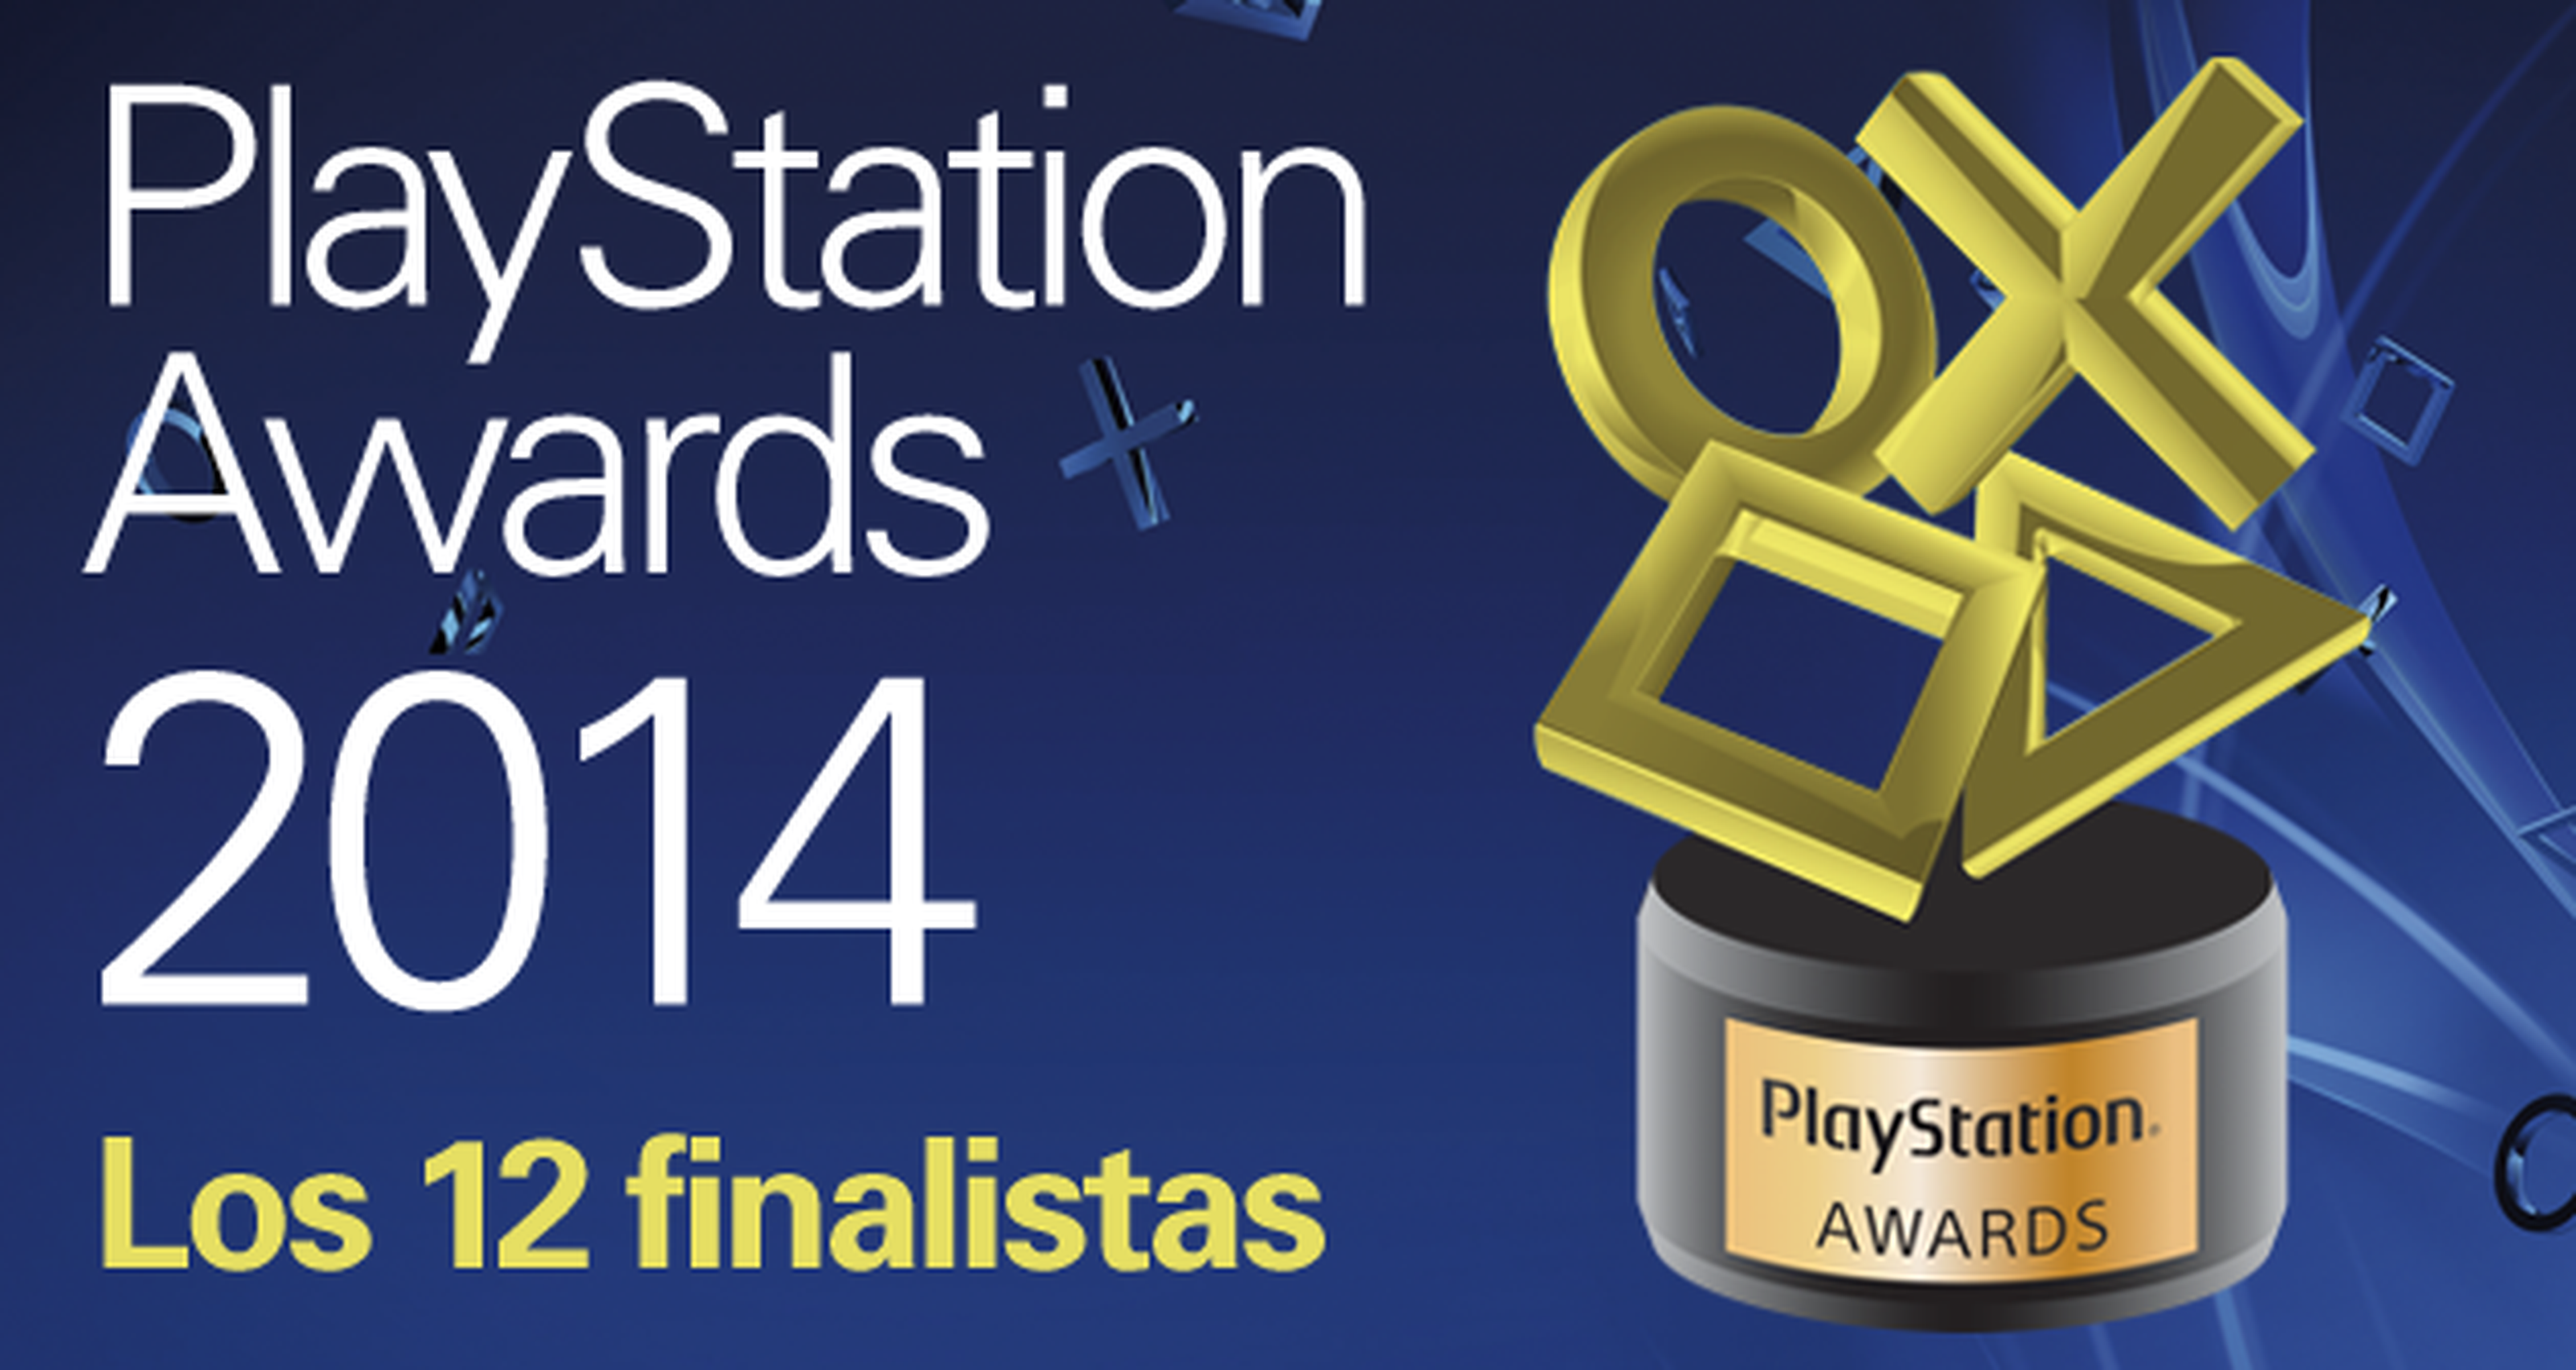 Los 12 finalistas de los PlayStation Awards